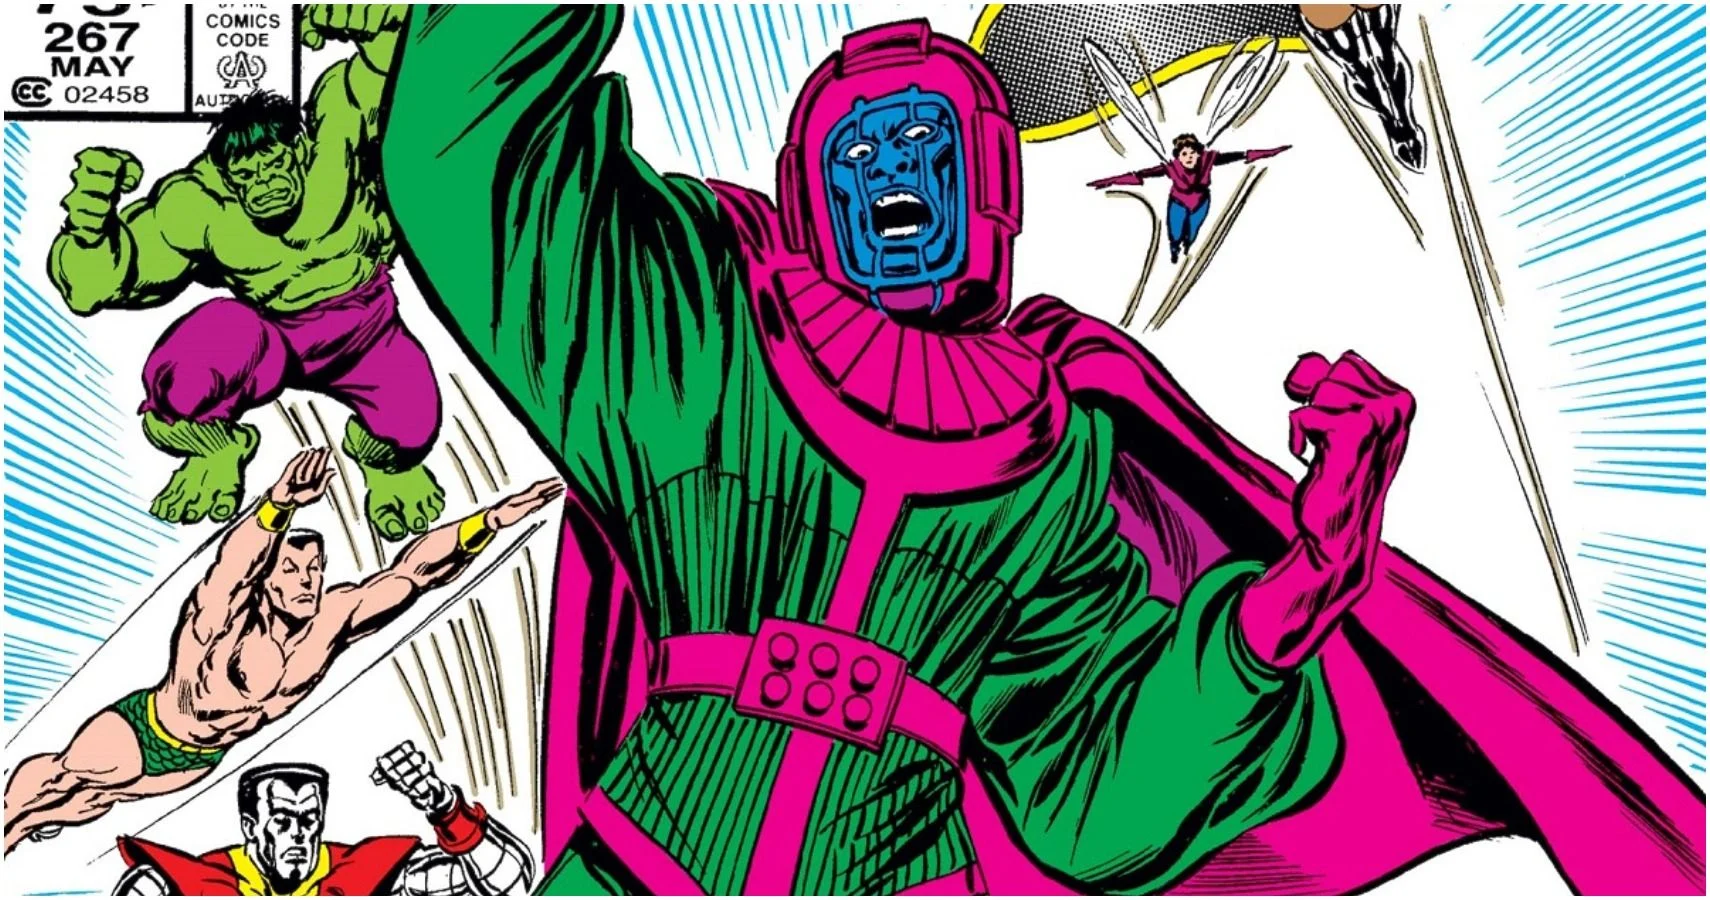 Kluczowym dla zrozumienia znaczenia Kanga Zdobywcy dla uniwersum Marvela zagadnieniem jest to, że w jego przypadku mówimy nie o jednej, a o wielu postaciach, będących de facto różnymi wersjami Kanga. Pod tym przydomkiem w komiksach debiutował on we wrześniu 1964 roku w zeszycie „Avengers #8”, a jego twórcami byli Stan Lee i Jack Kirby. Niecały rok wcześniej w zeszycie „Fantastic Four #19” pojawił się jednak faraon Rama-Tut, inna wersja złoczyńcy. 